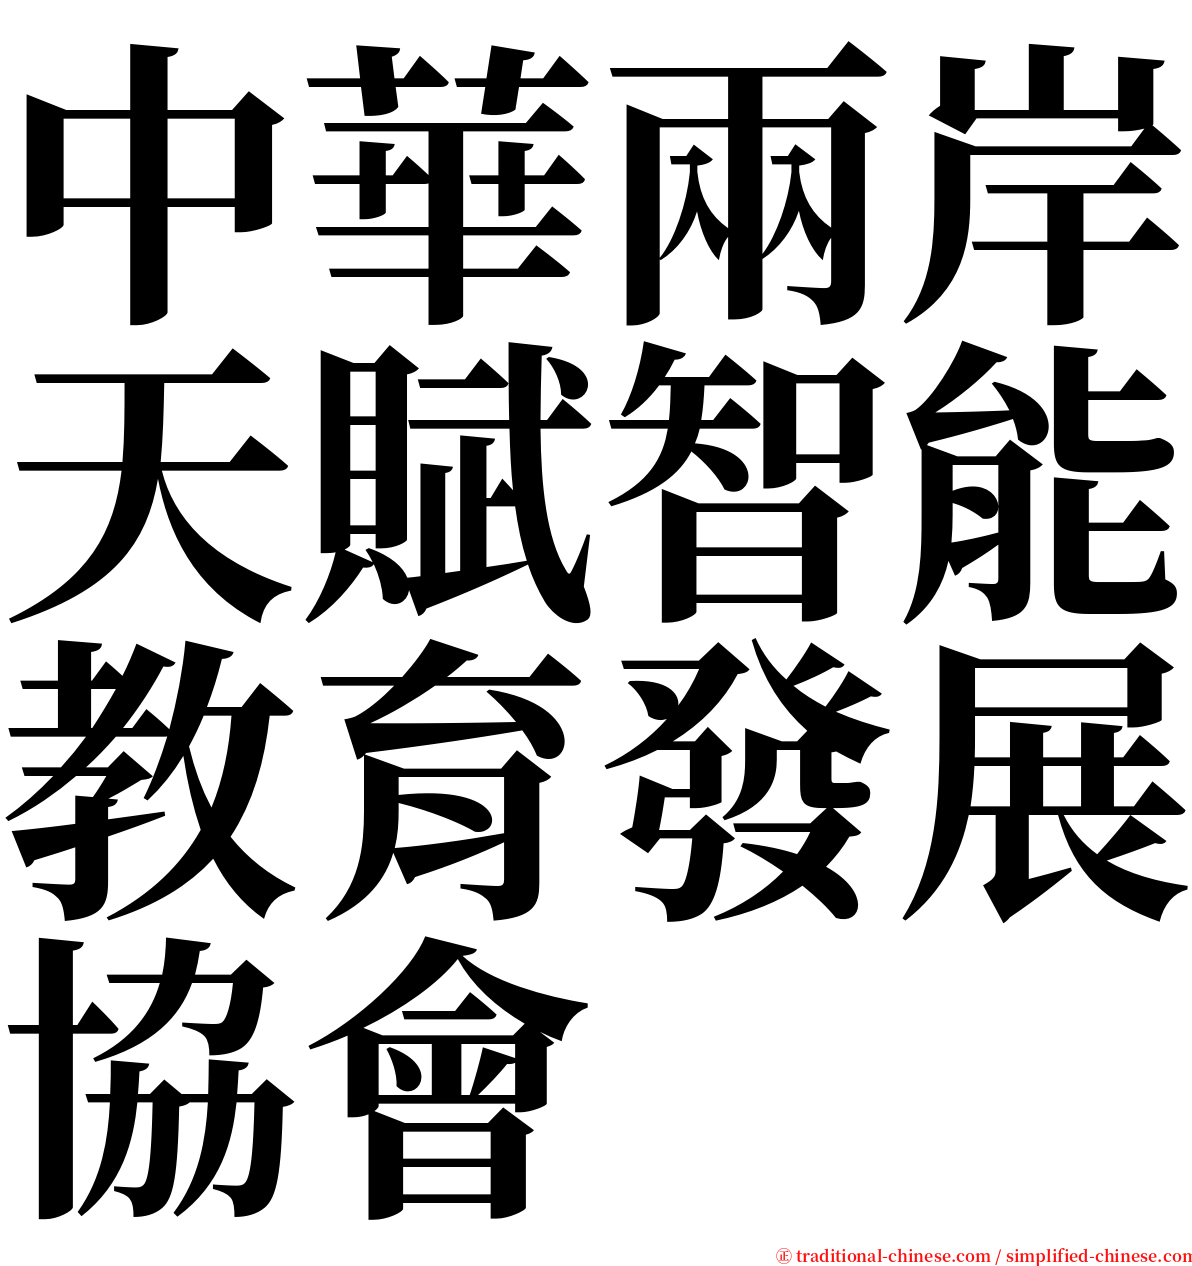 中華兩岸天賦智能教育發展協會 serif font